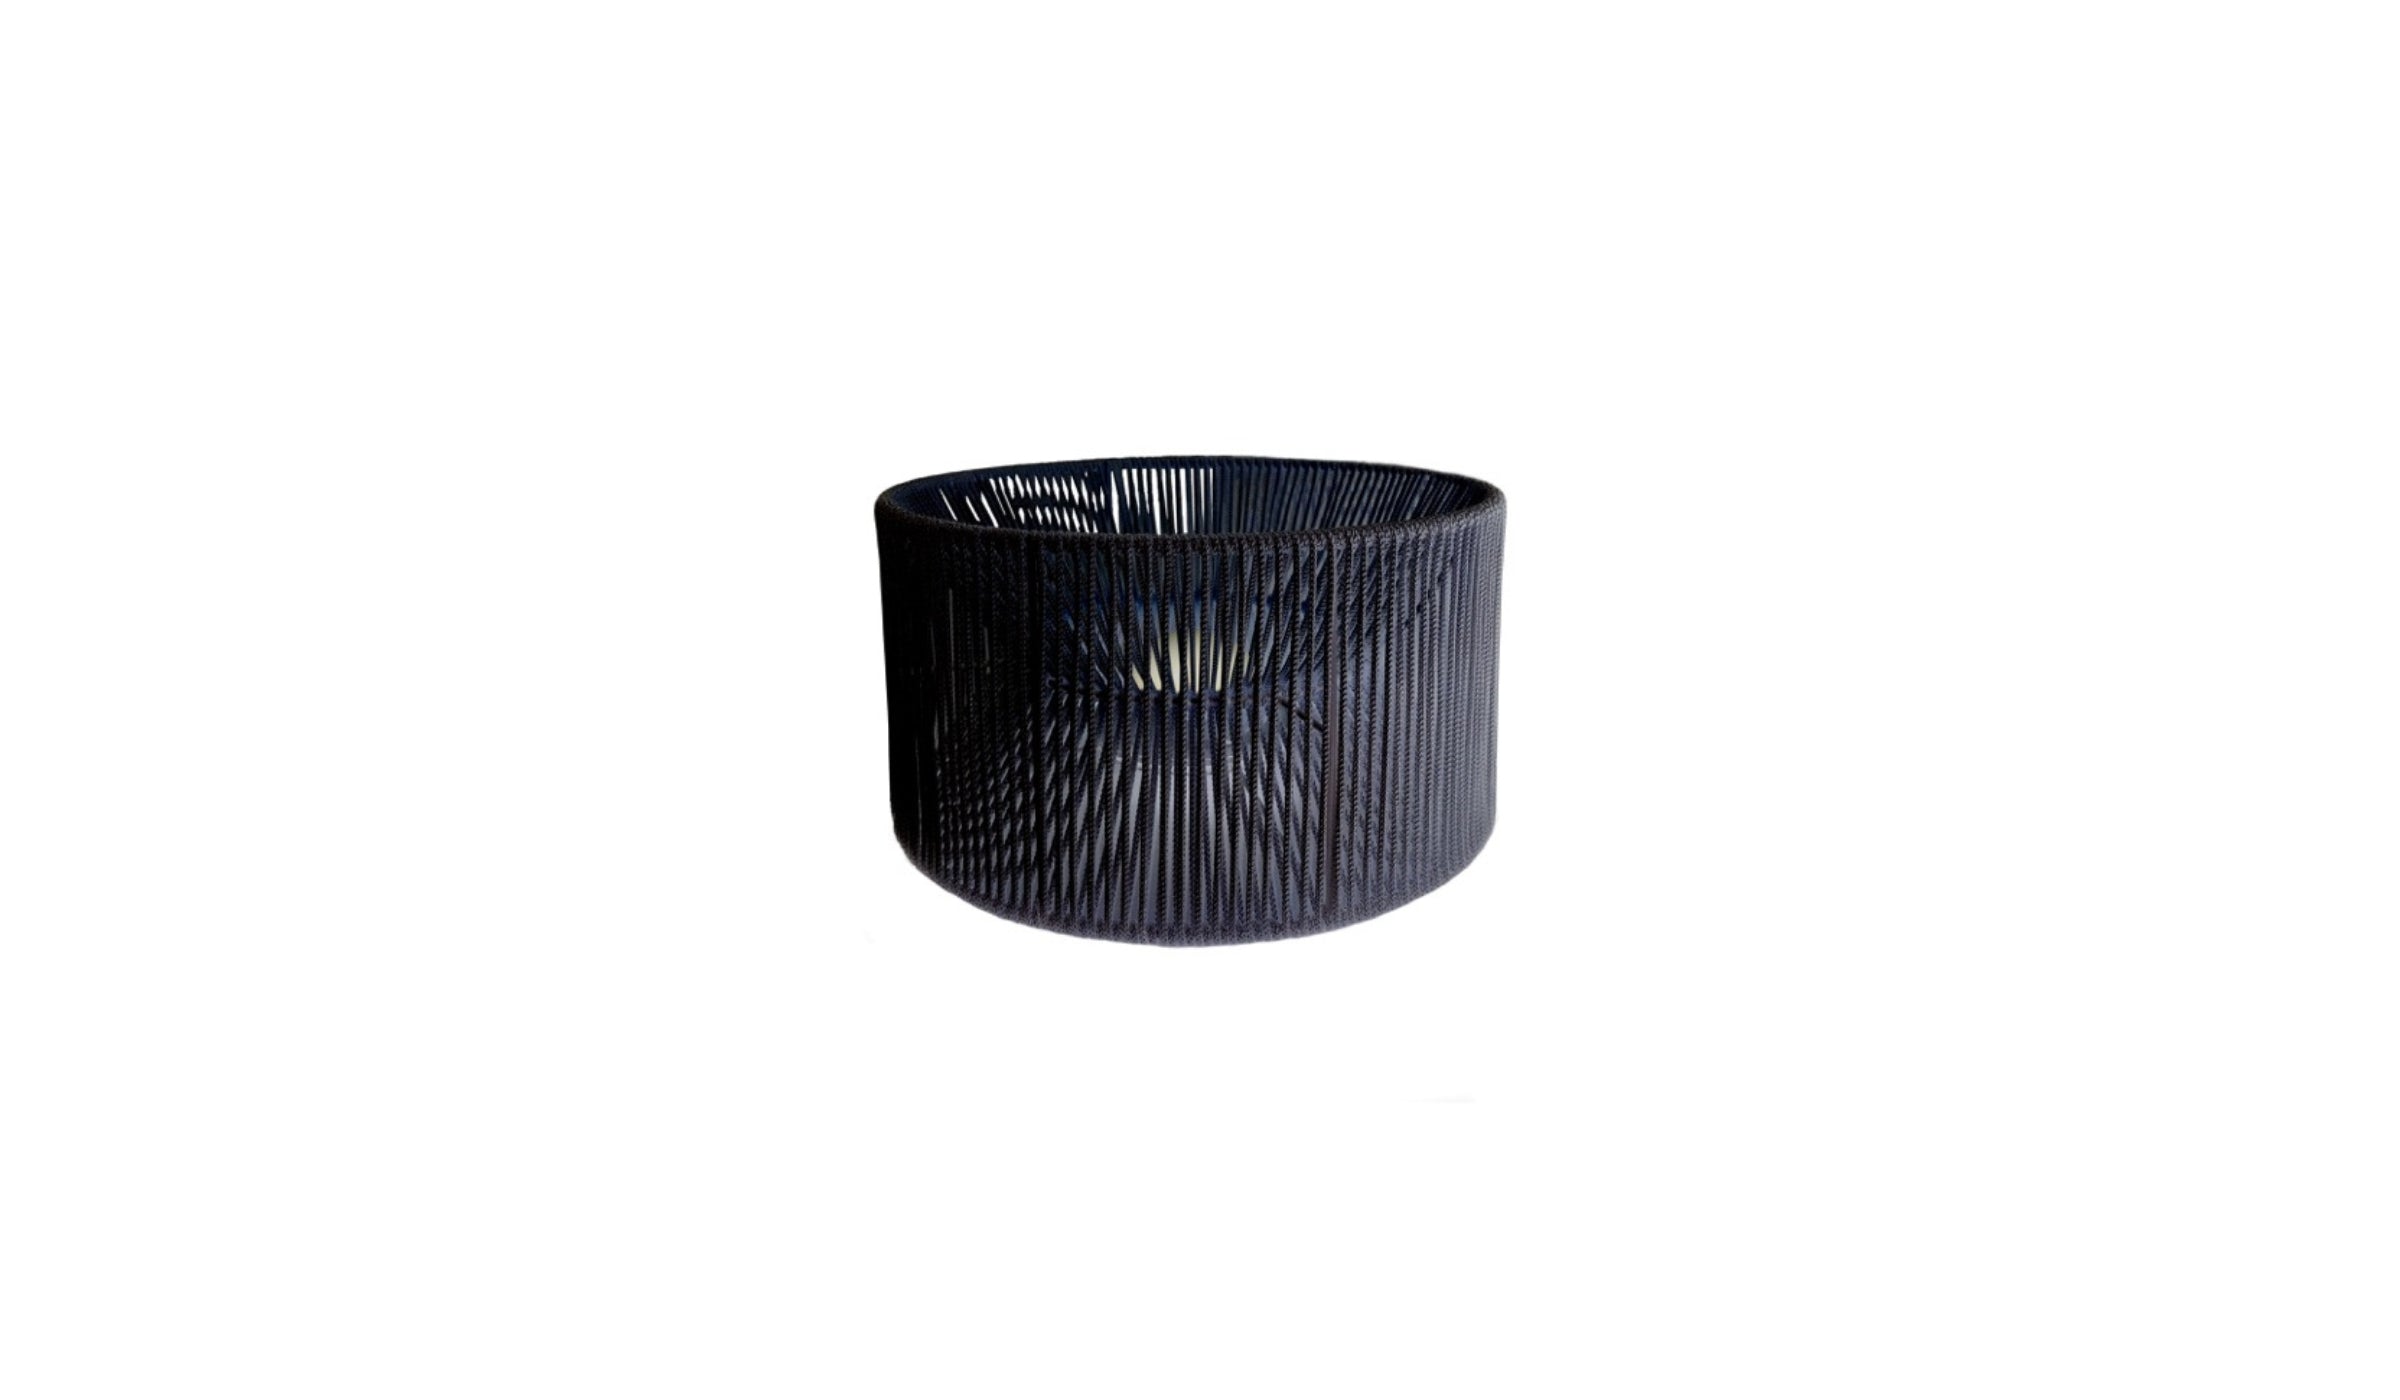 Acapulco - Lampe portable extérieure en métal et corde de nylon noir, durable et adaptable